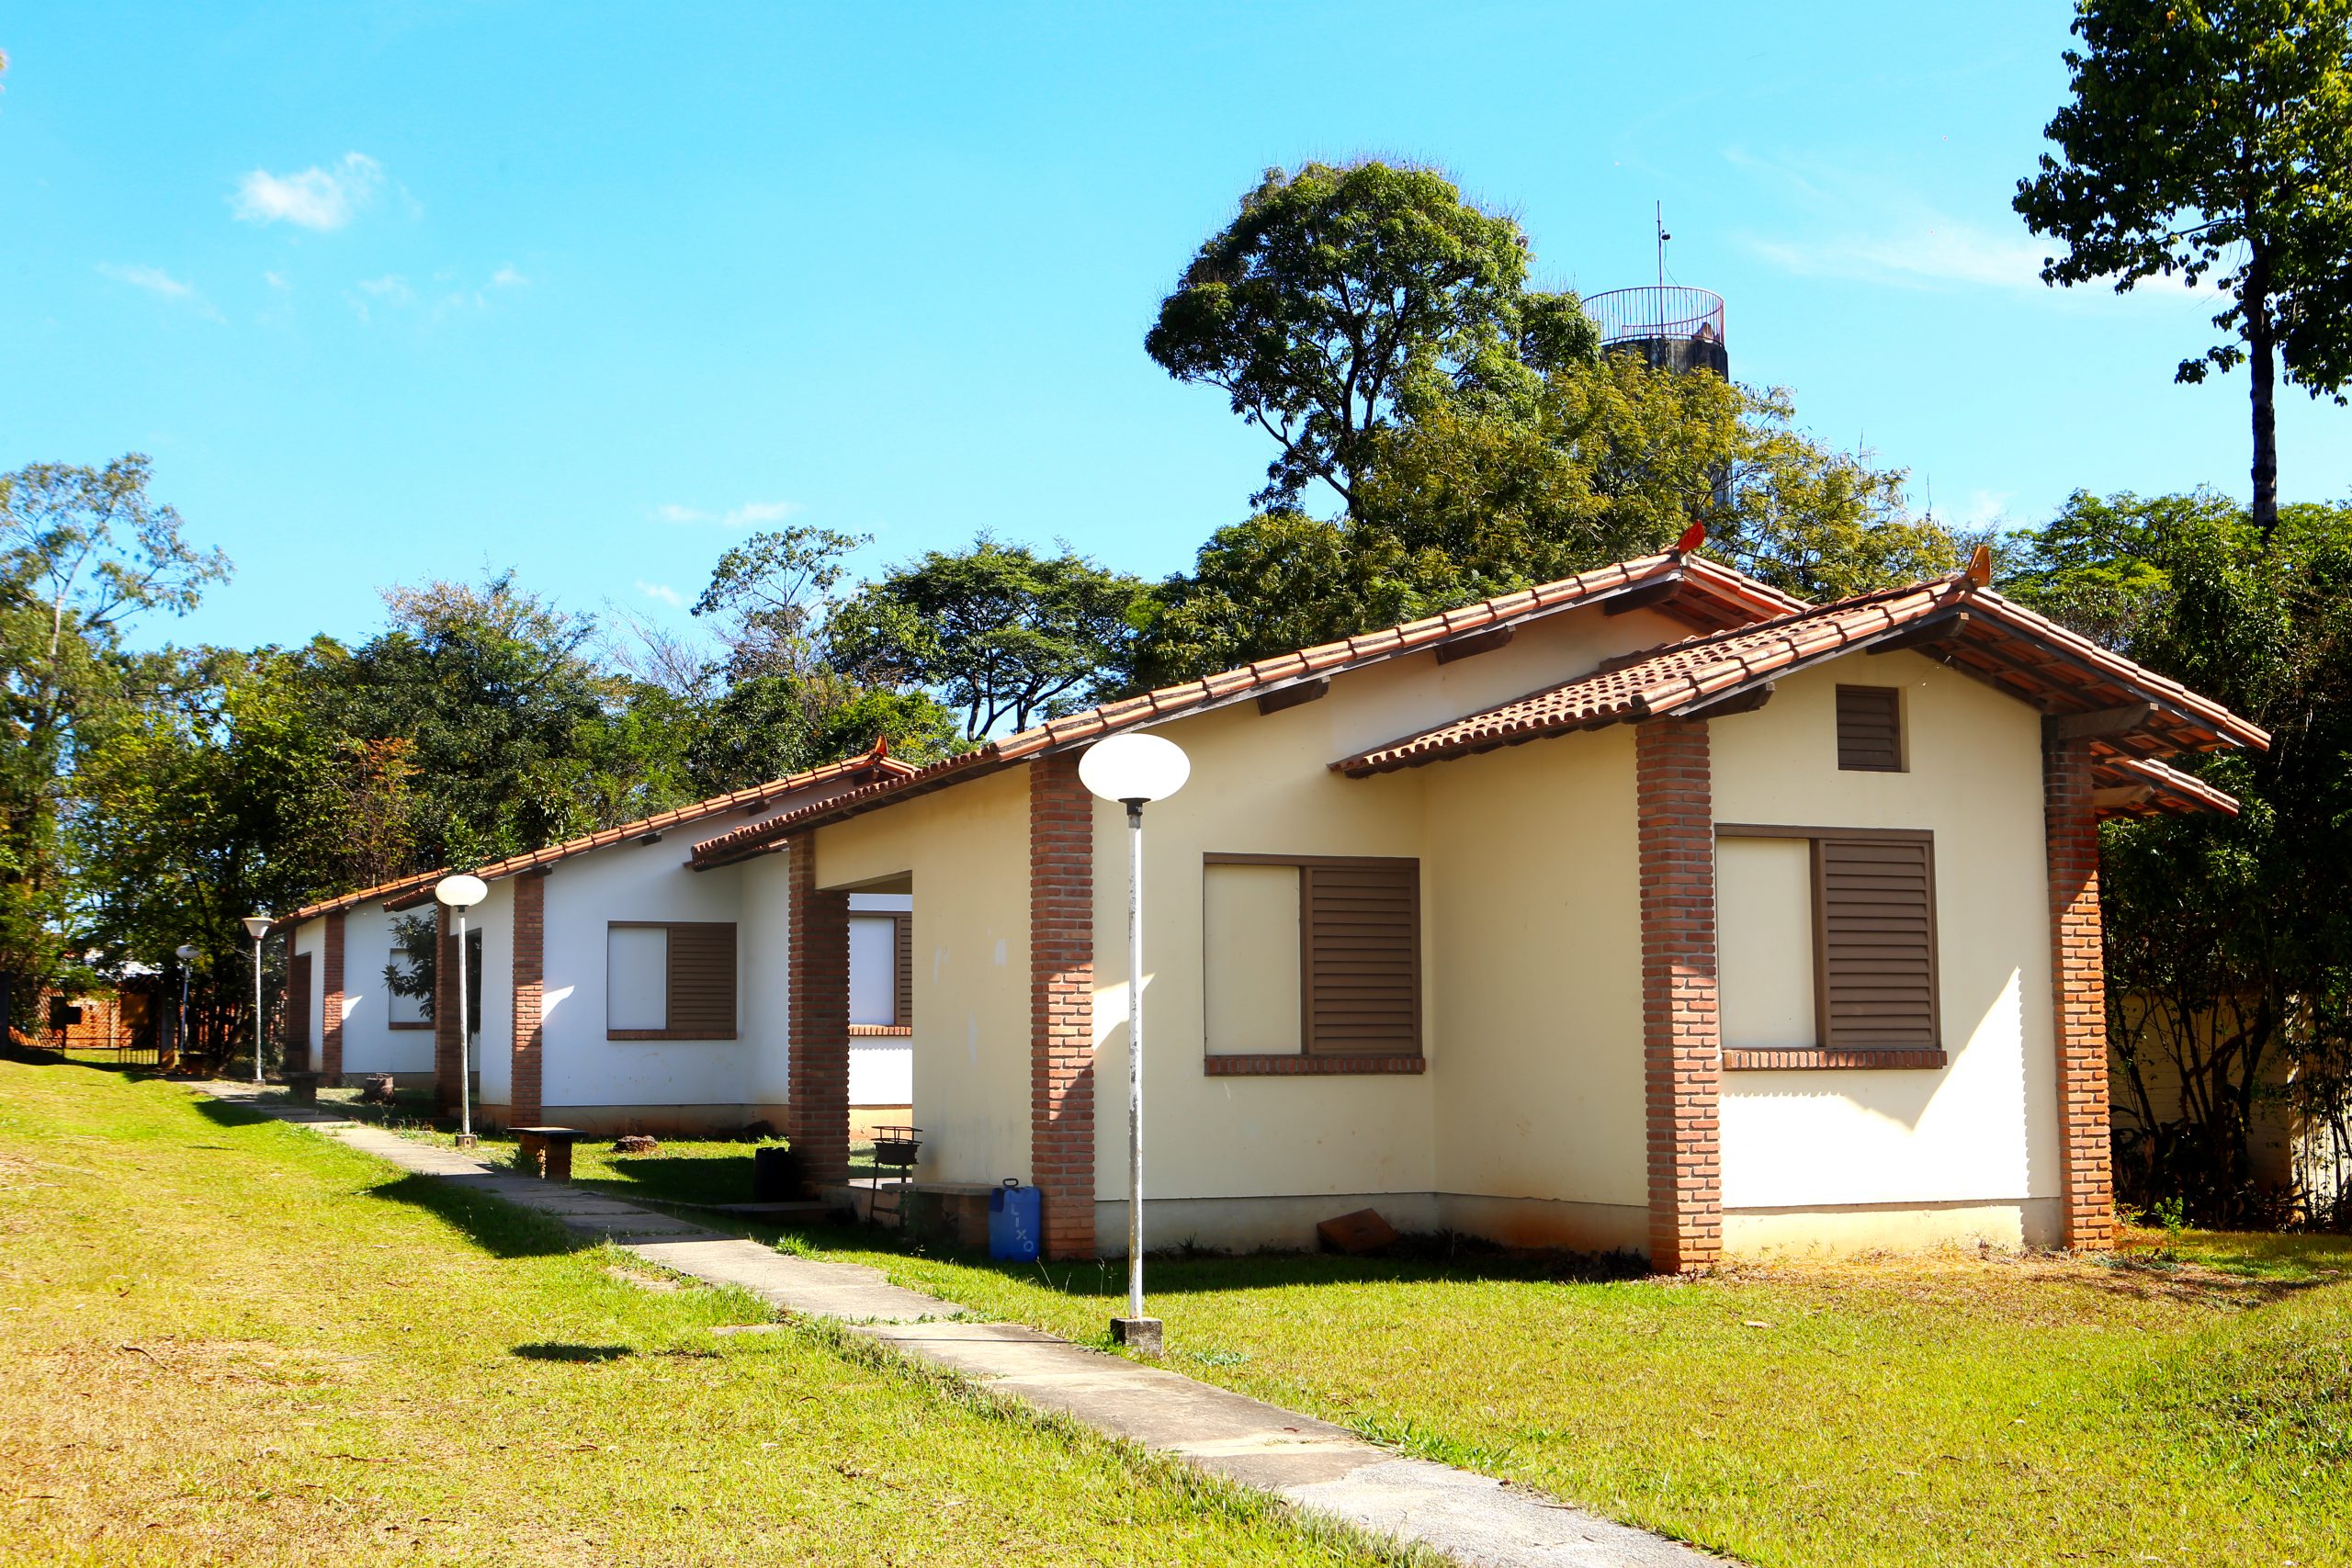 Clube Minas Gerais - Com mais de 129.000 m2 de área verde, o CLUBE MINAS  GERAIS se destaca entre os principais clubes da região metropolitana de Belo  Horizonte, colocando a disposição dos